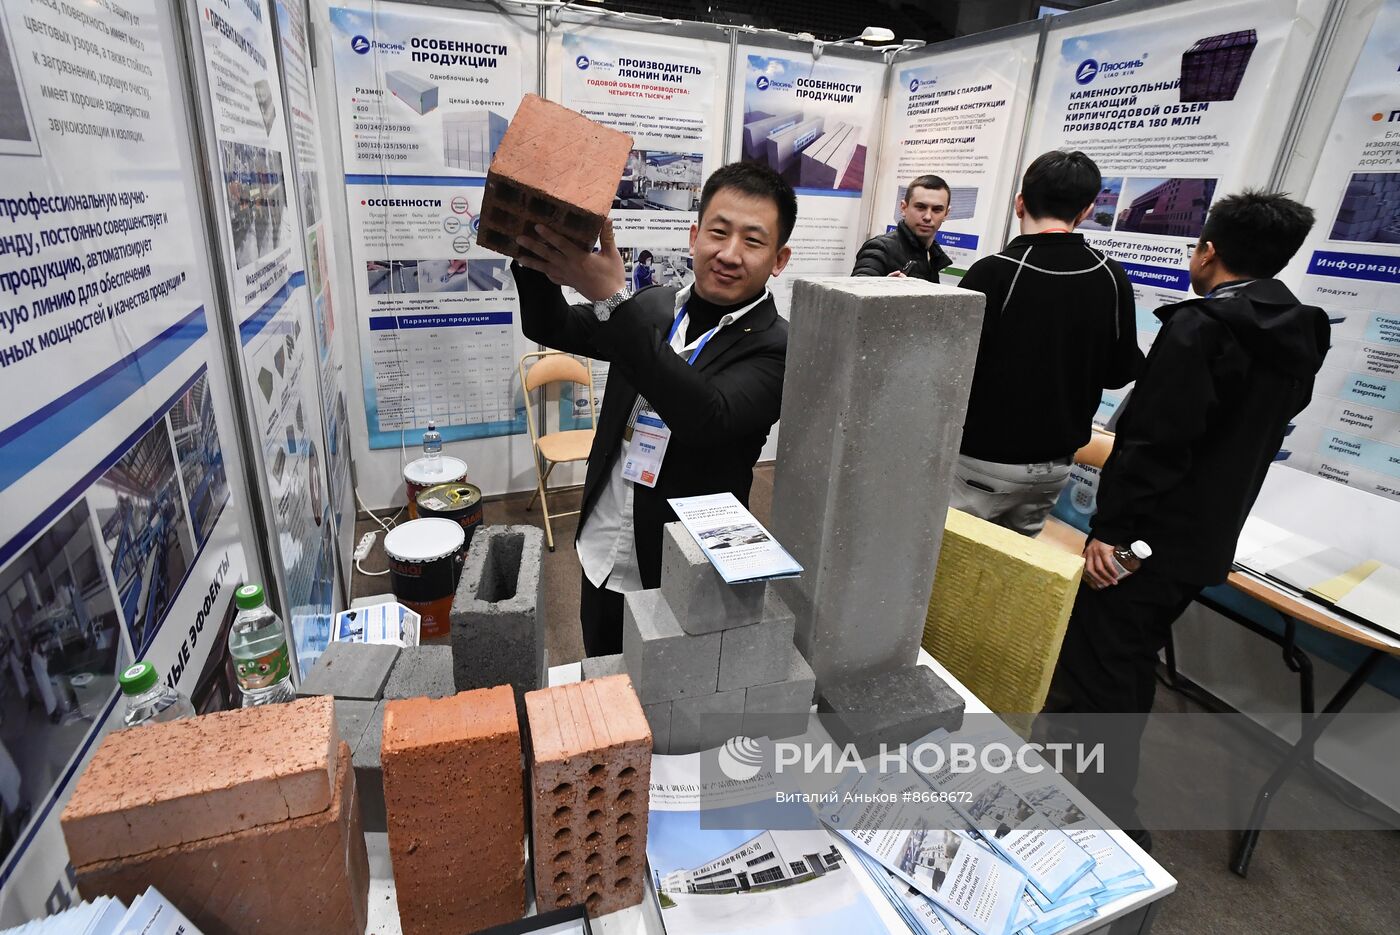 30-я международная строительная выставка "Город" во Владивостоке